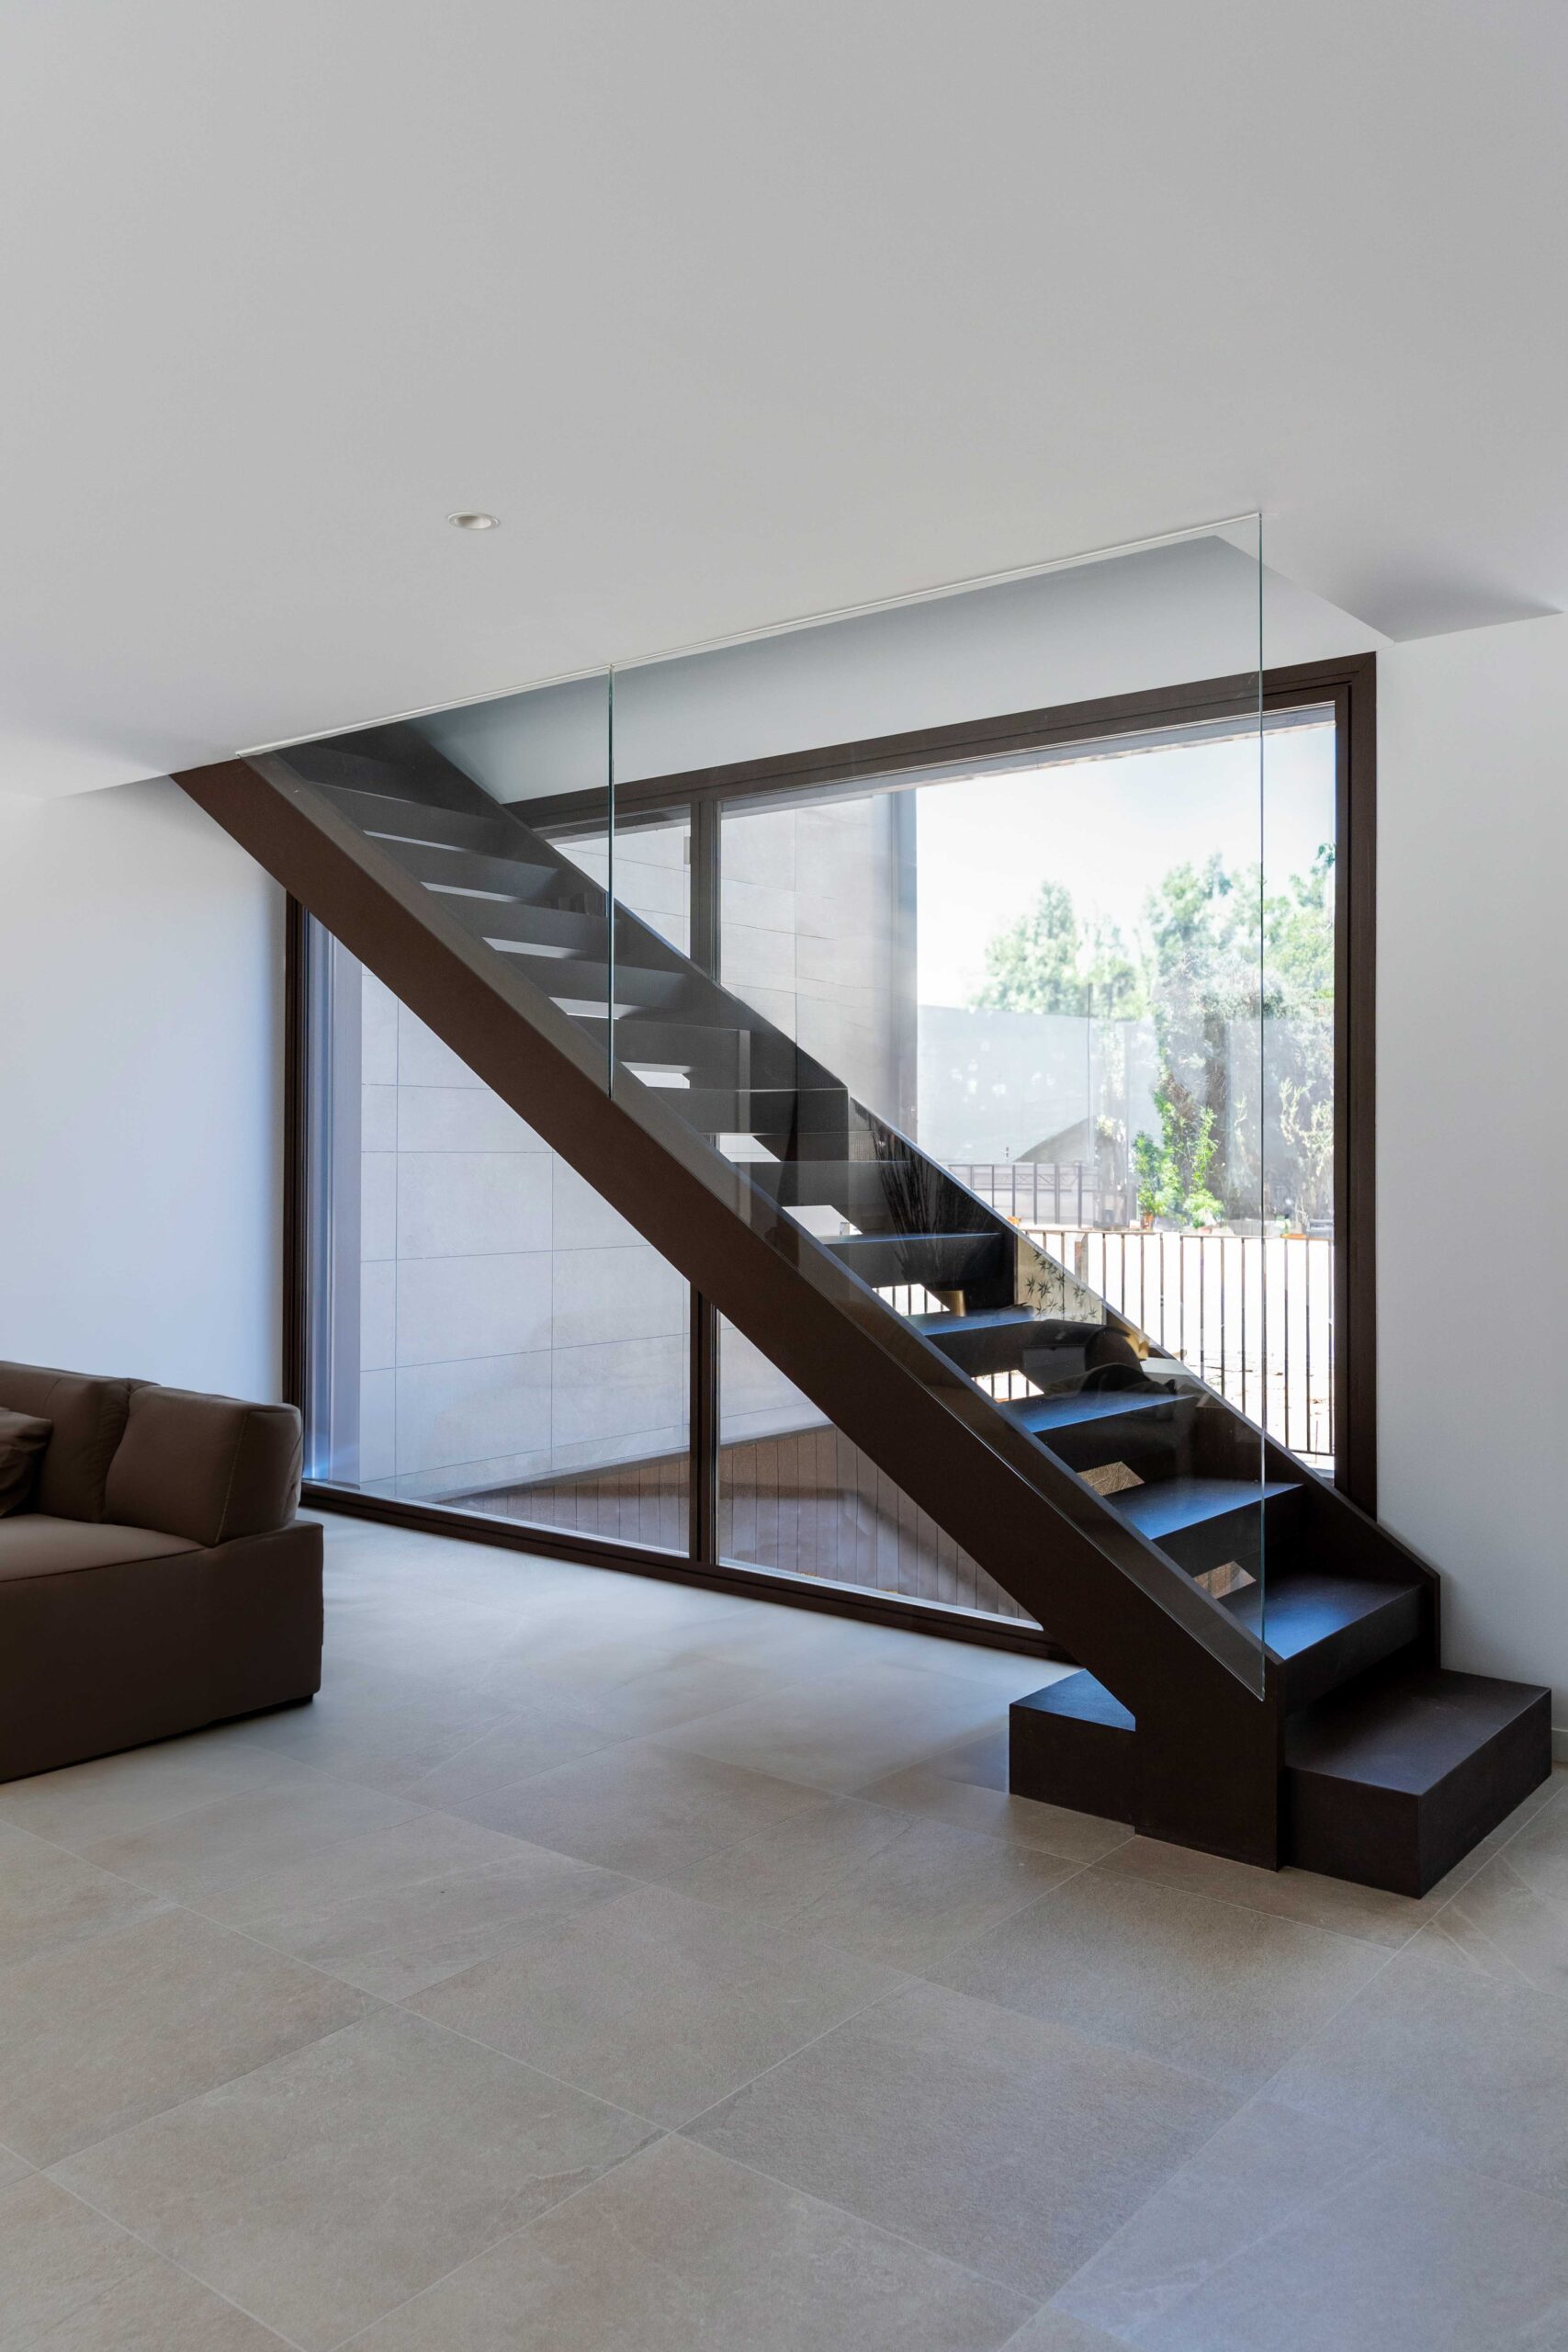 Modernes Innendesign in einer Luxuswohnung, freitragende, mittig angeordnete Treppe